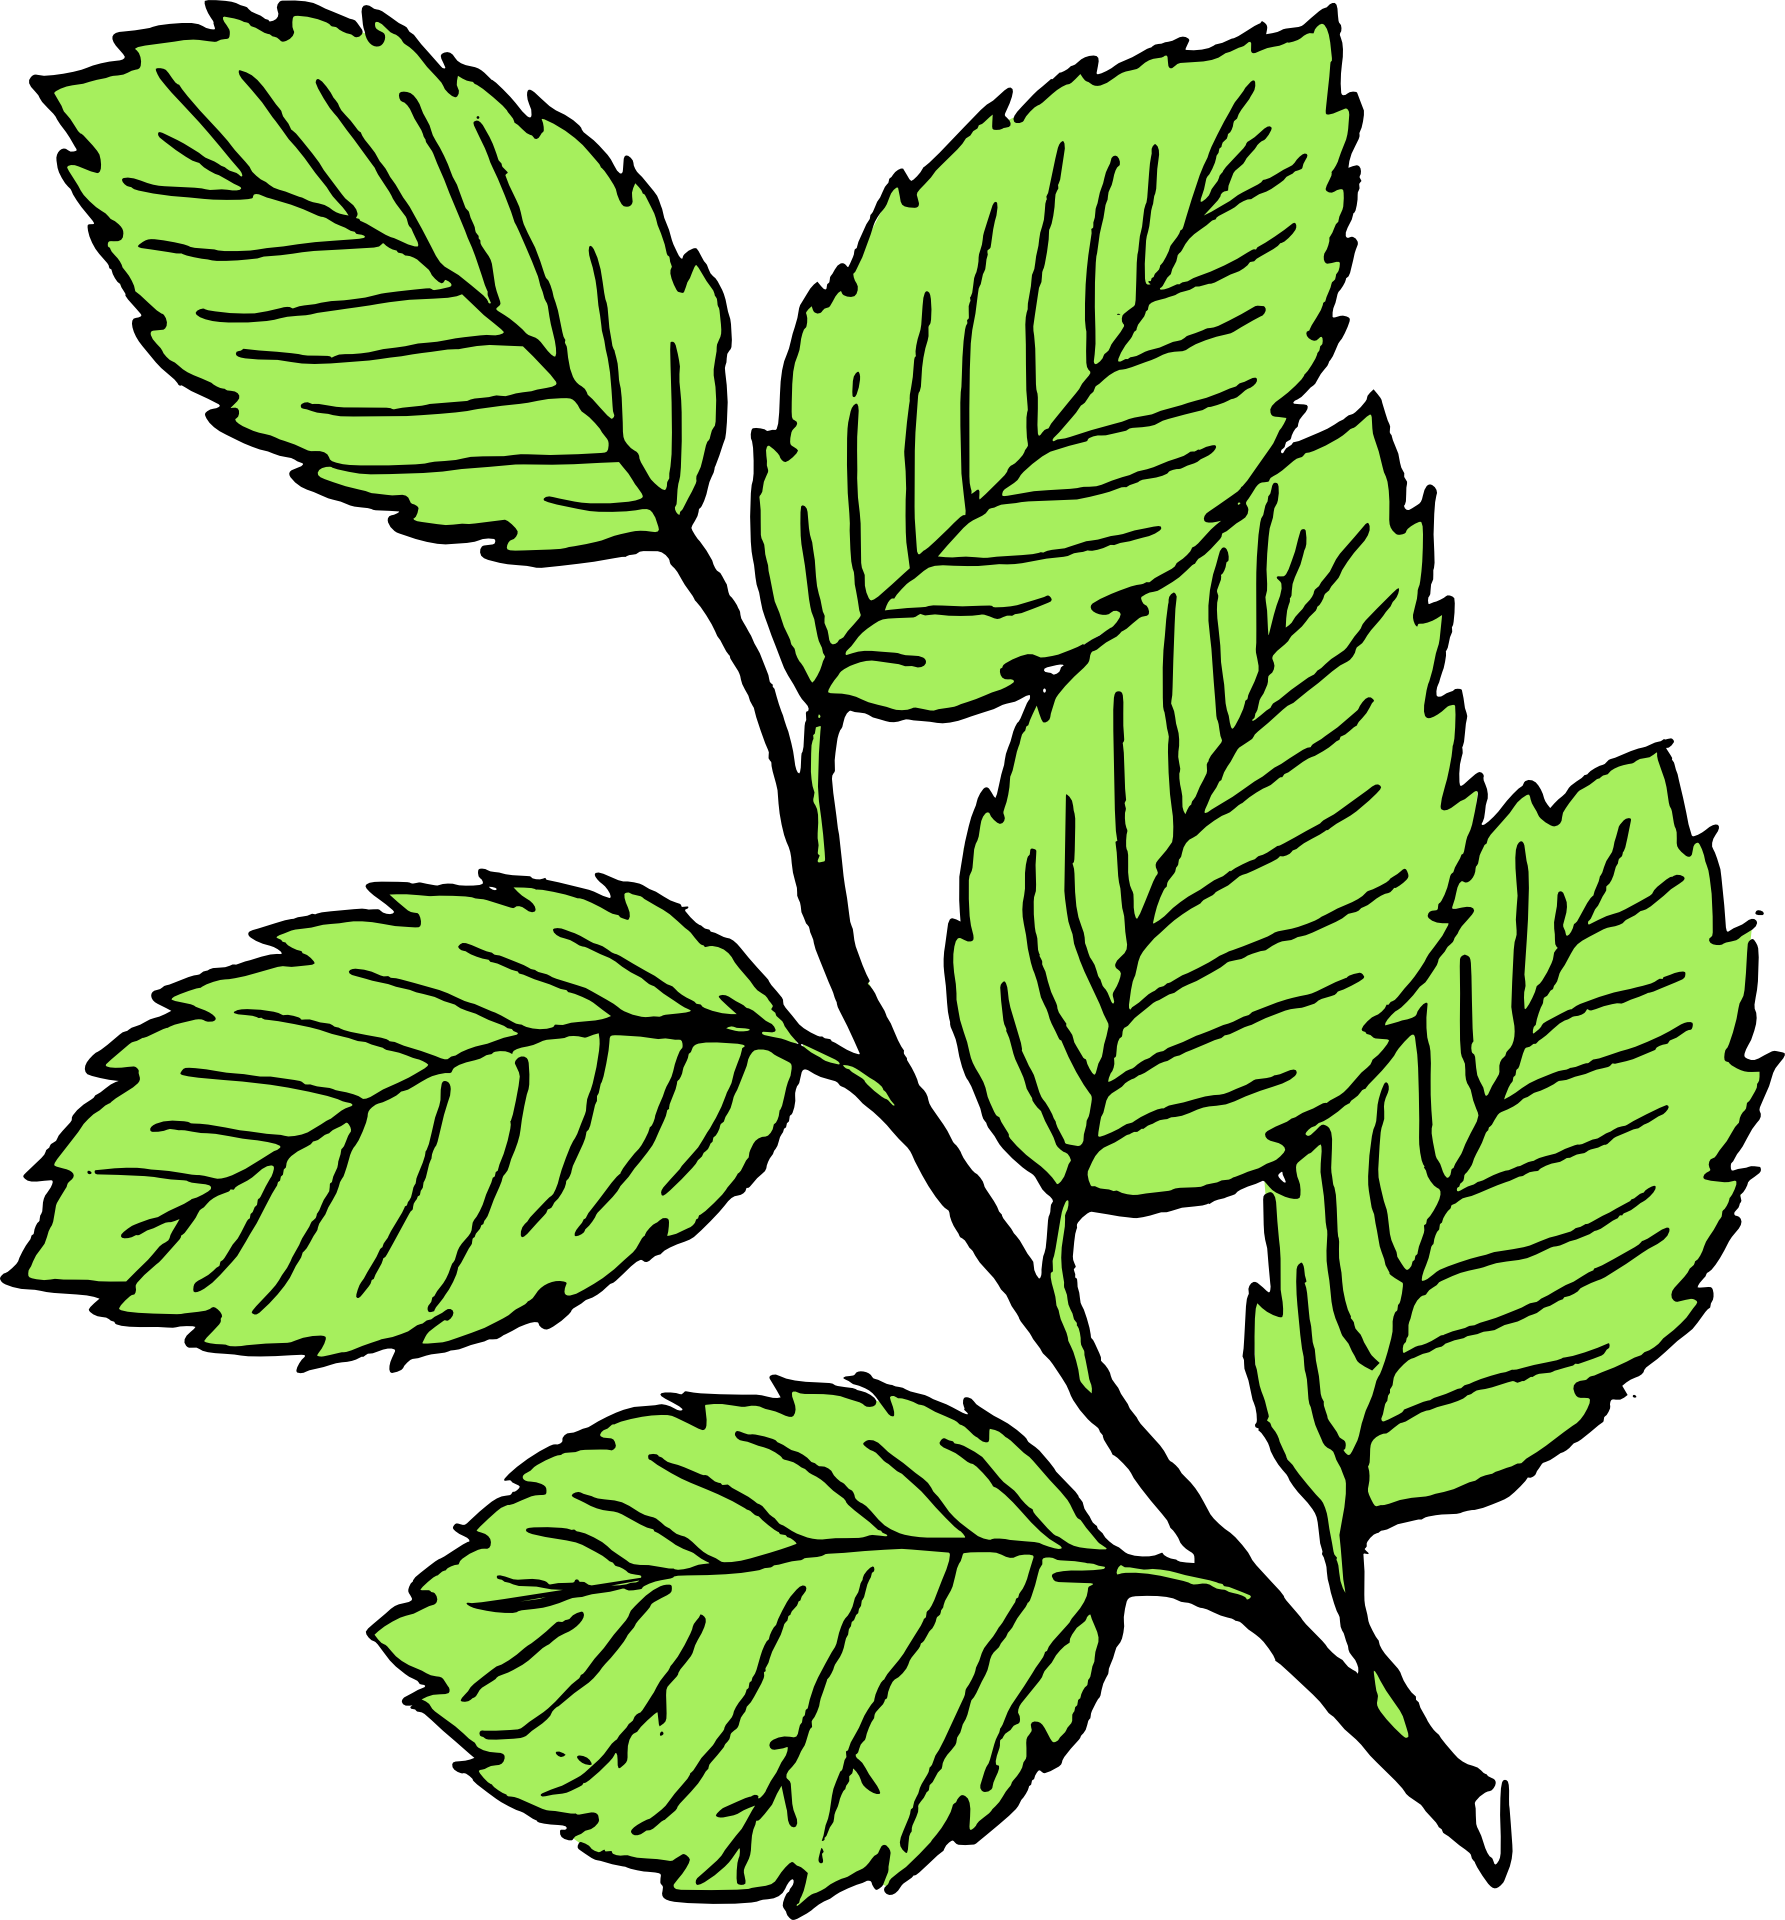 Leaves leaf drawing